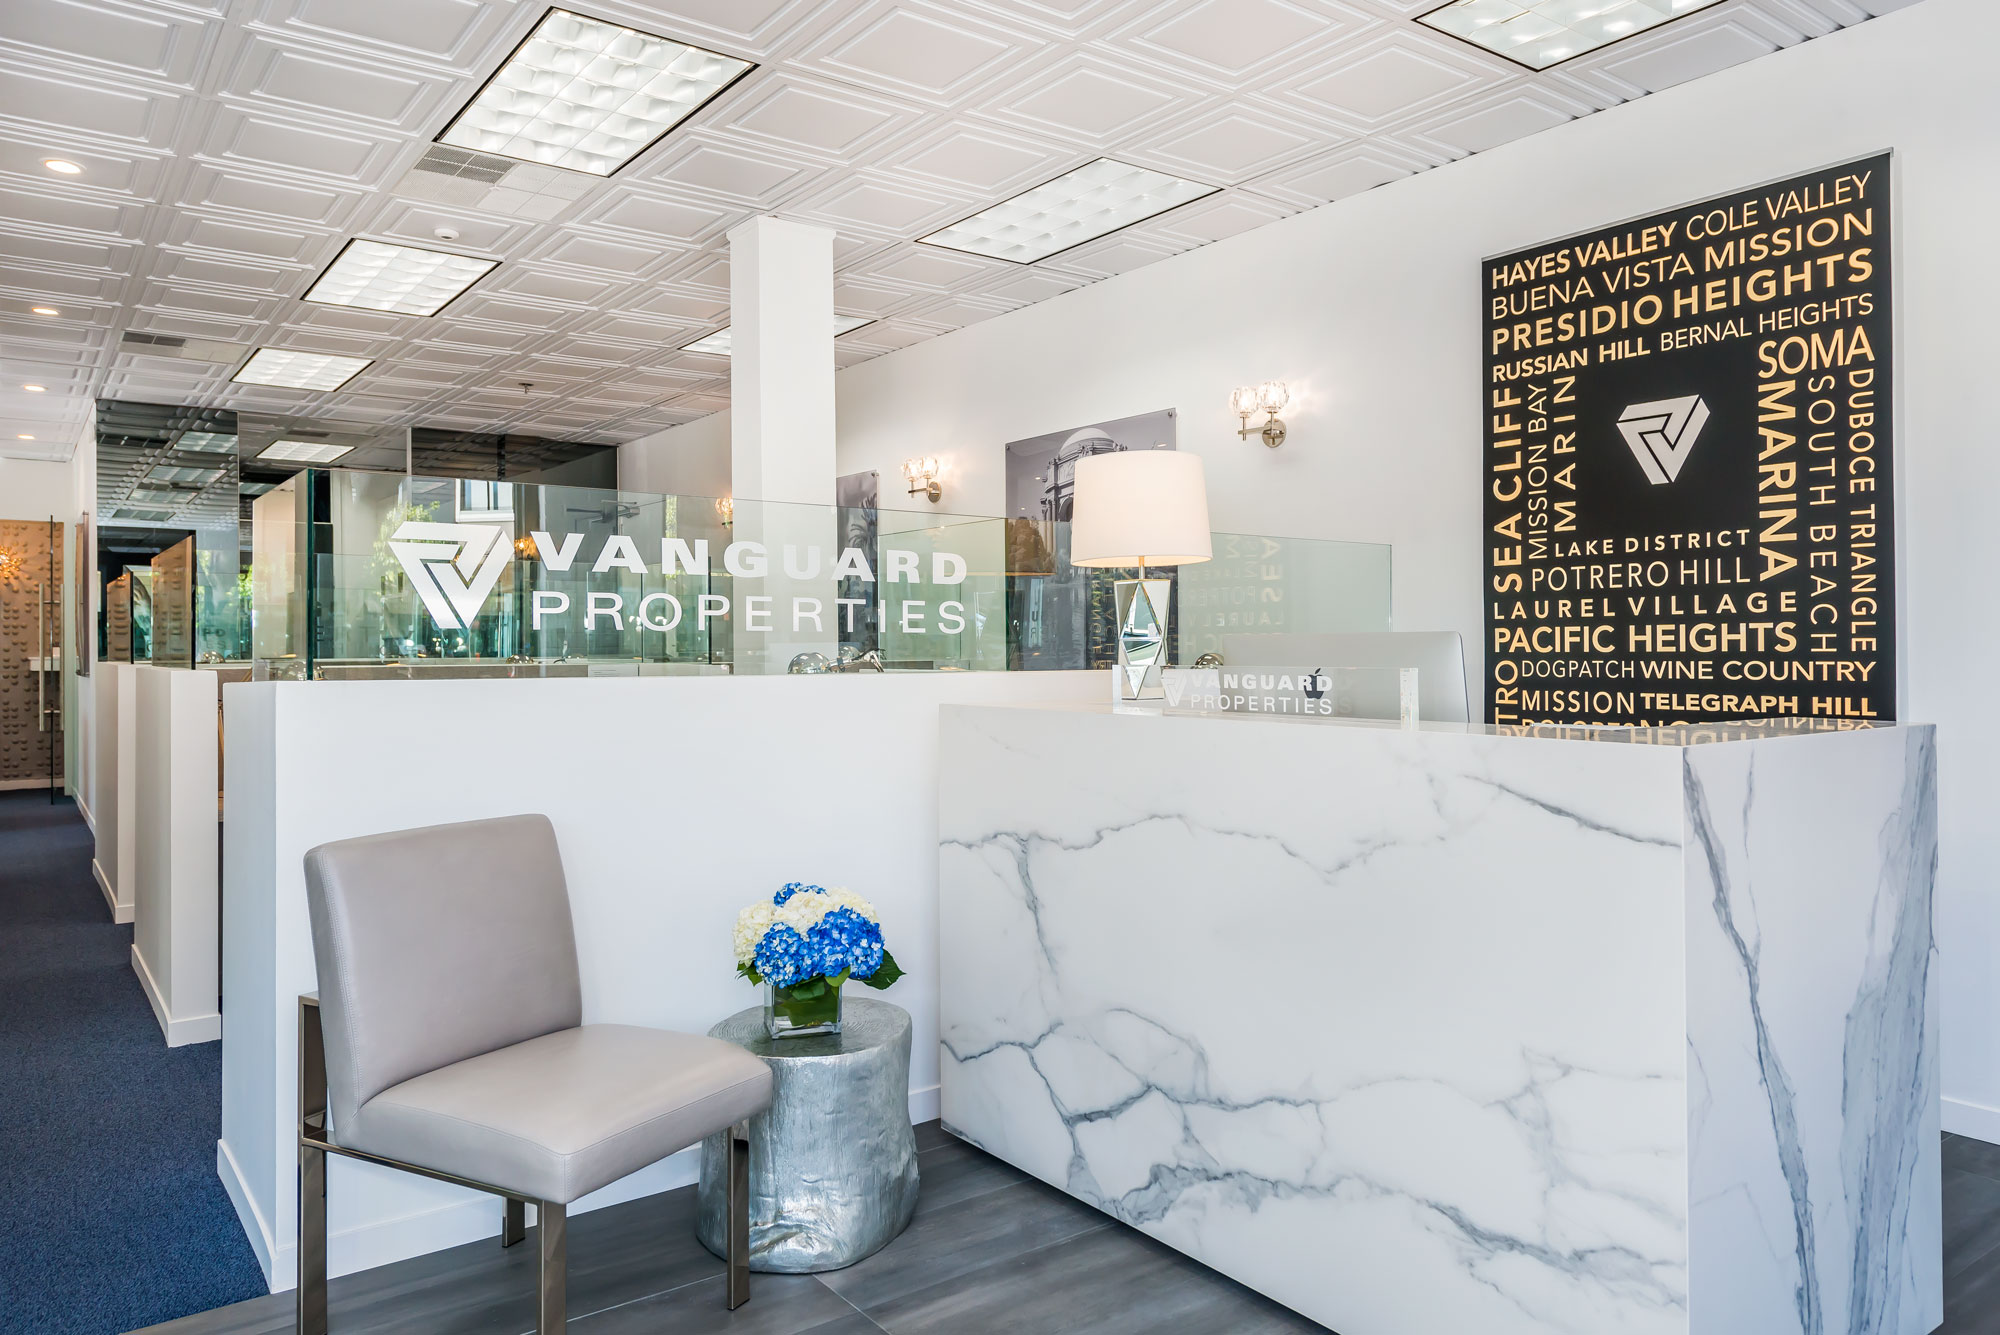 The Vanguard Properties Mobile Reception Desk